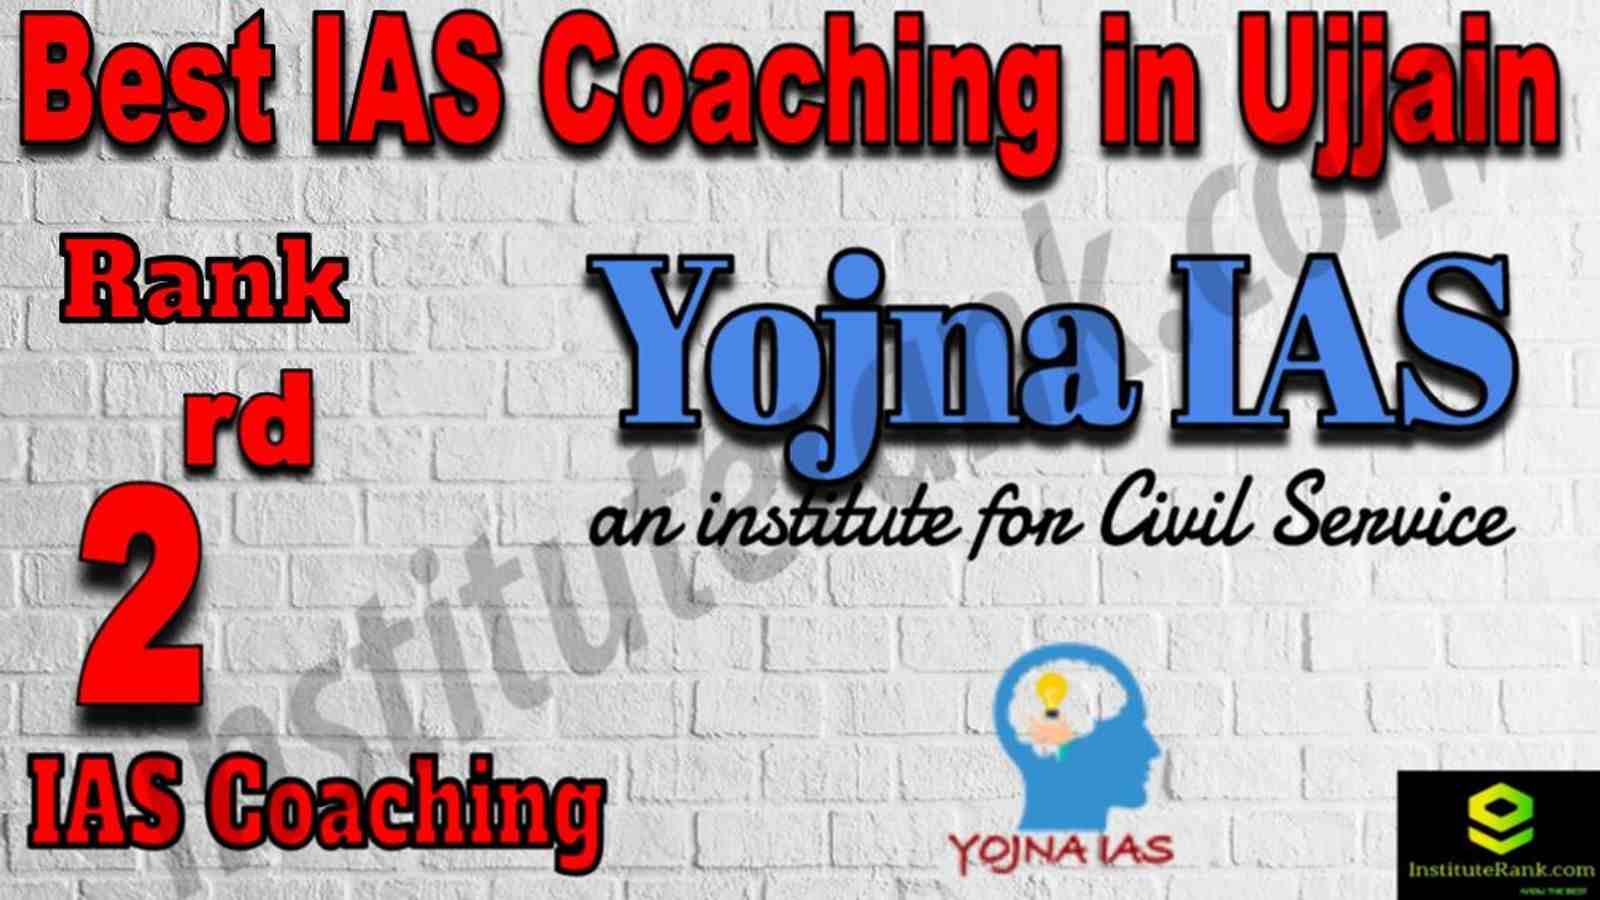 2nd Best IAS Coaching in Ujjain